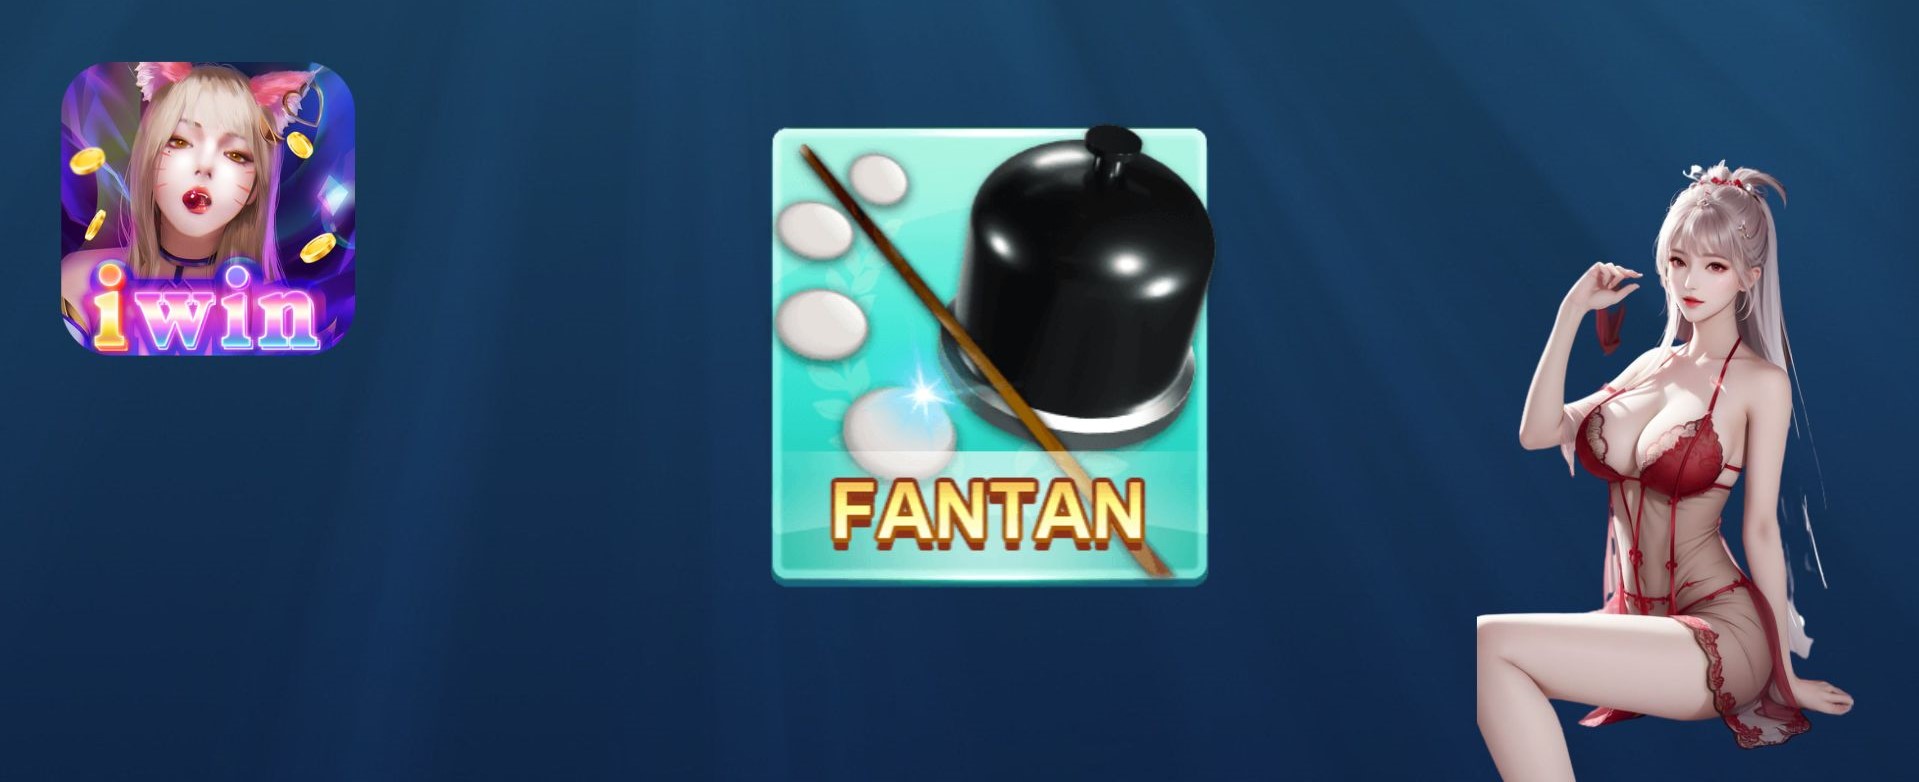 Cập nhật thông tin về game Fantan IWIN